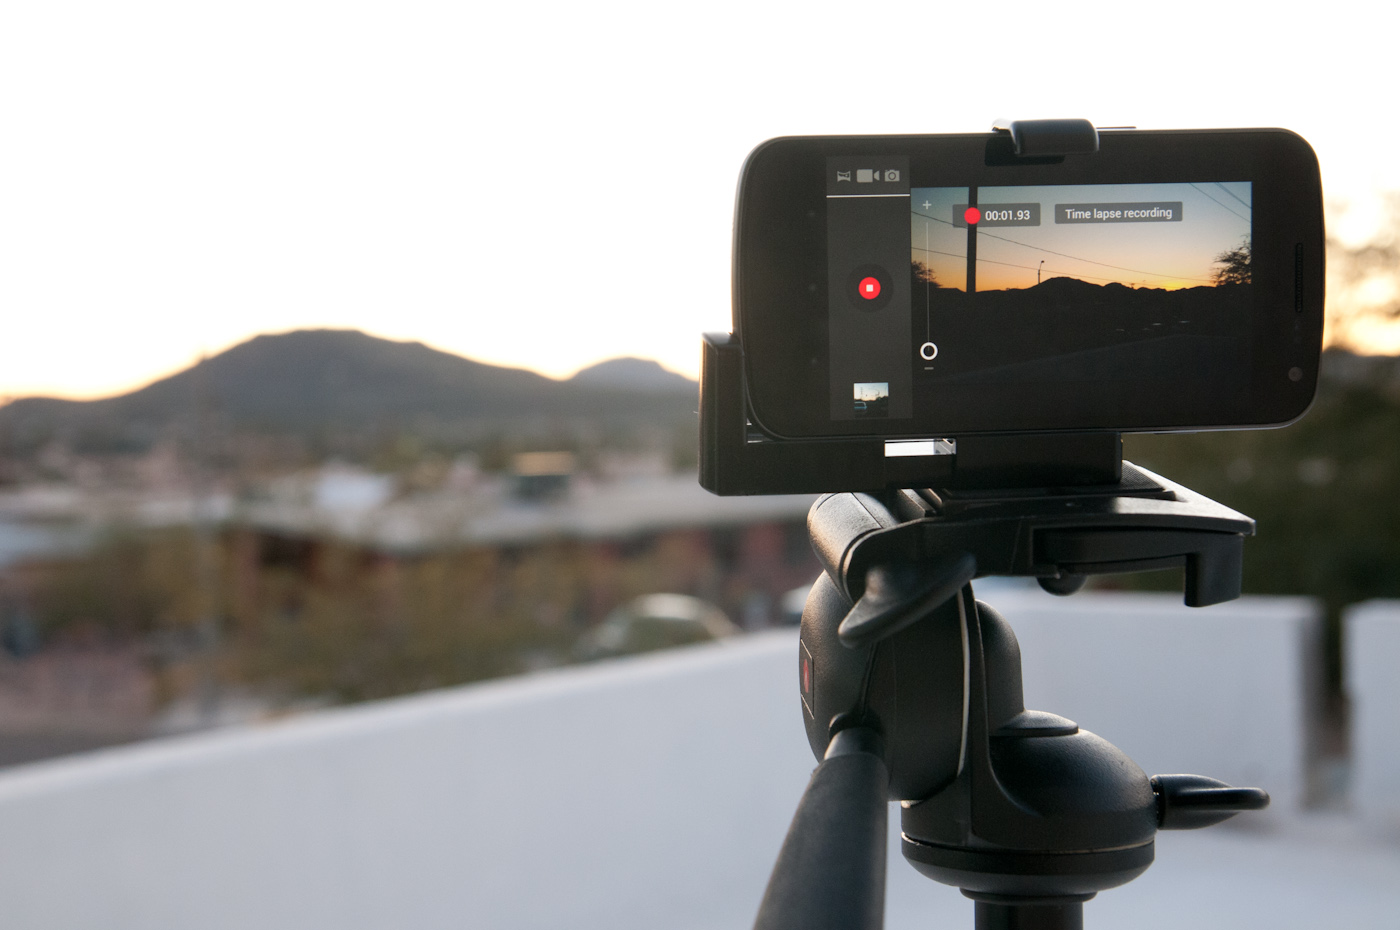 Pencurian Video Bisa Terjadi di Medsos, 2 Cara Mudah Tambahkan Watermark ke Video